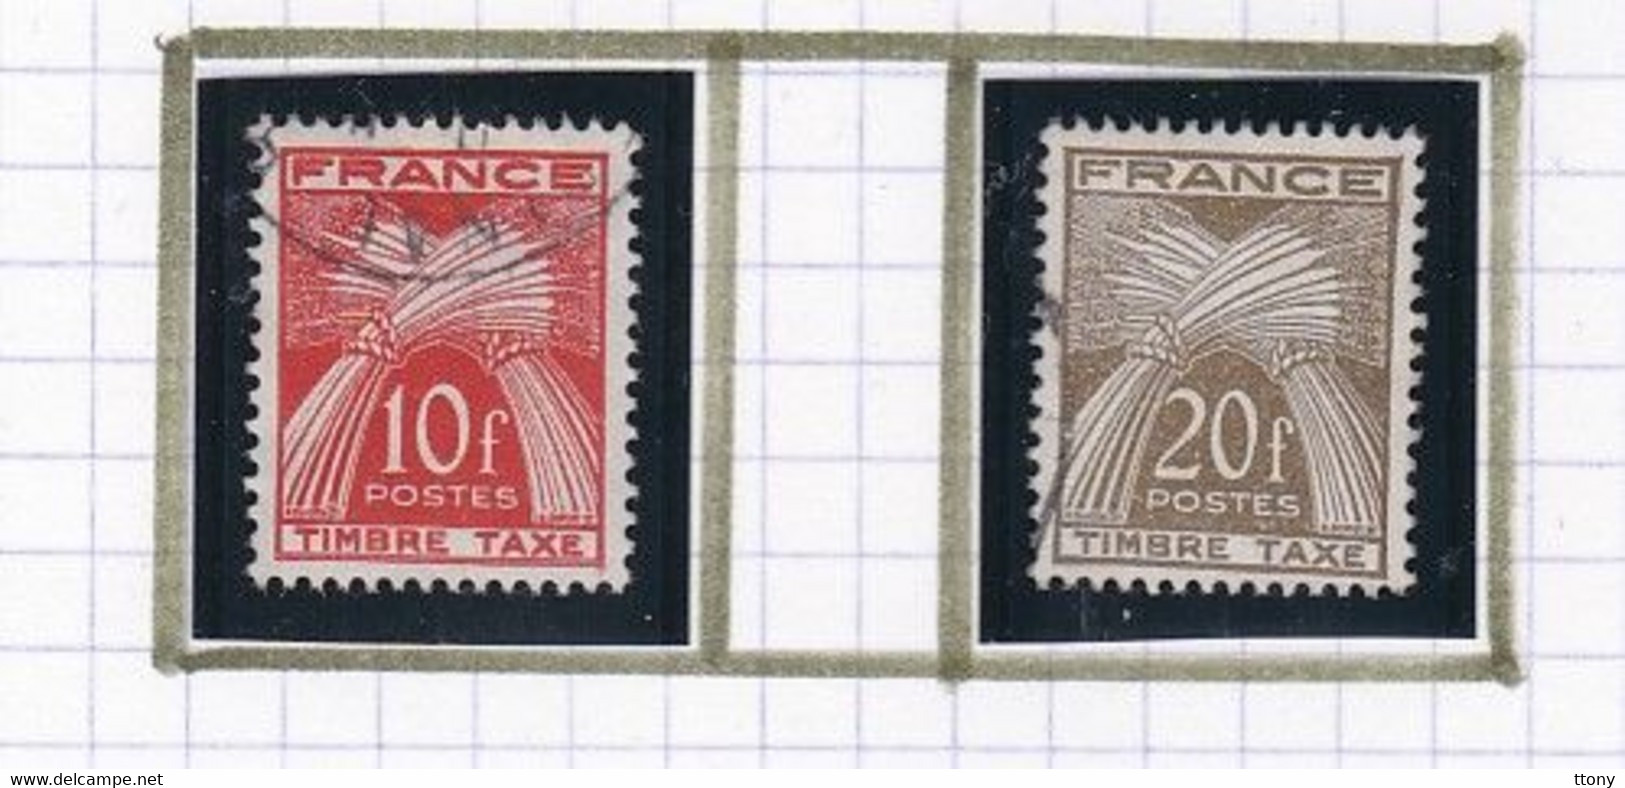 un ensemble de timbres taxes différentes années  timbres oblitérés et  quelques timbres neufs